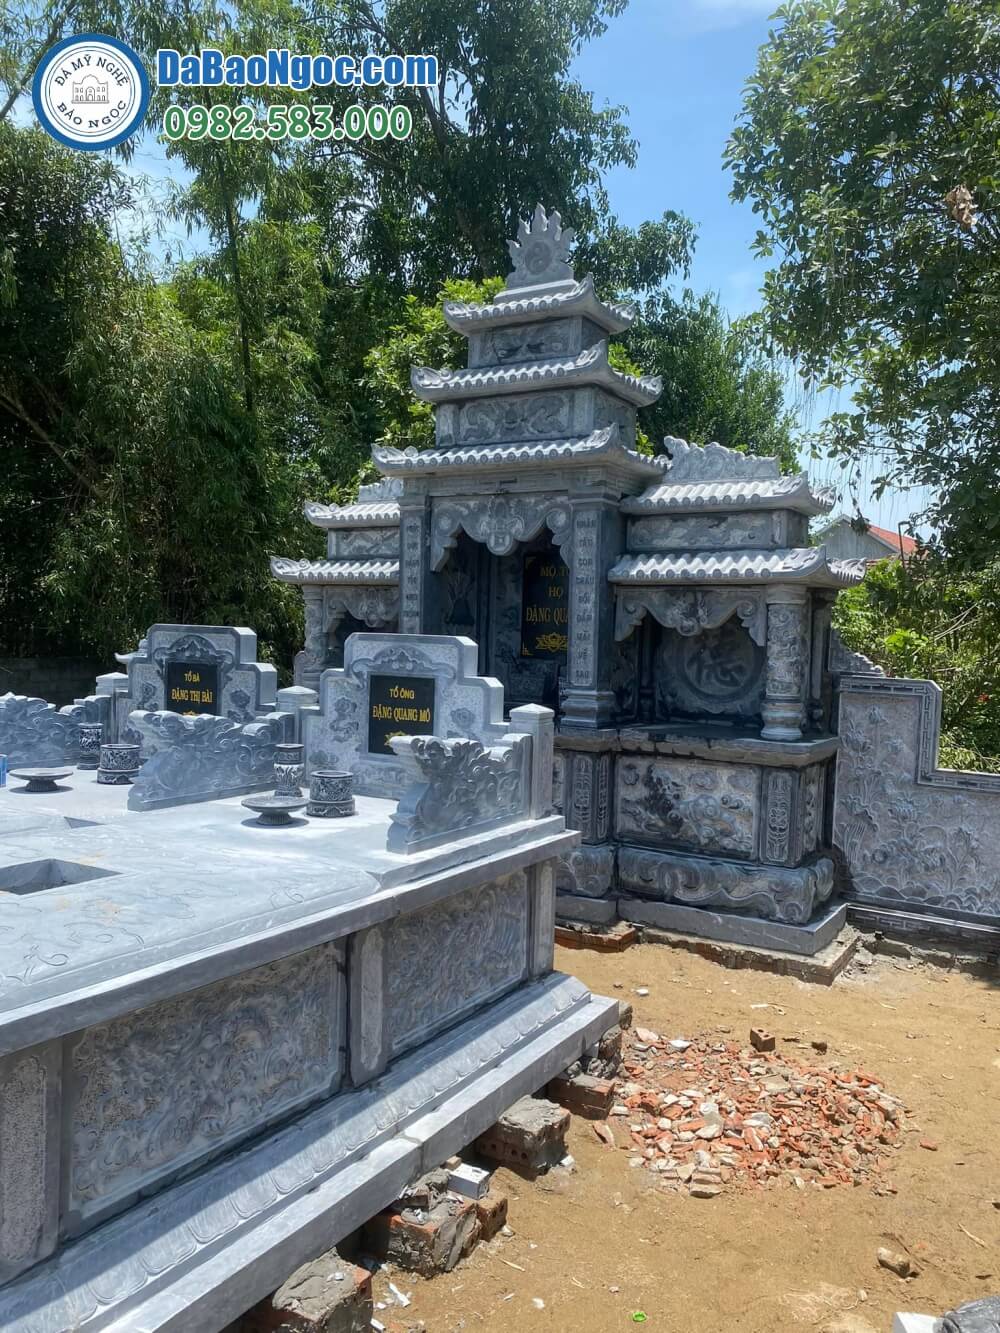 Làm mộ đá nguyên khối tại Thừa Thiên Huế | Cơ sở chế tác uy tín, báo giá, mẫu thiết kế riêng theo yêu cầu